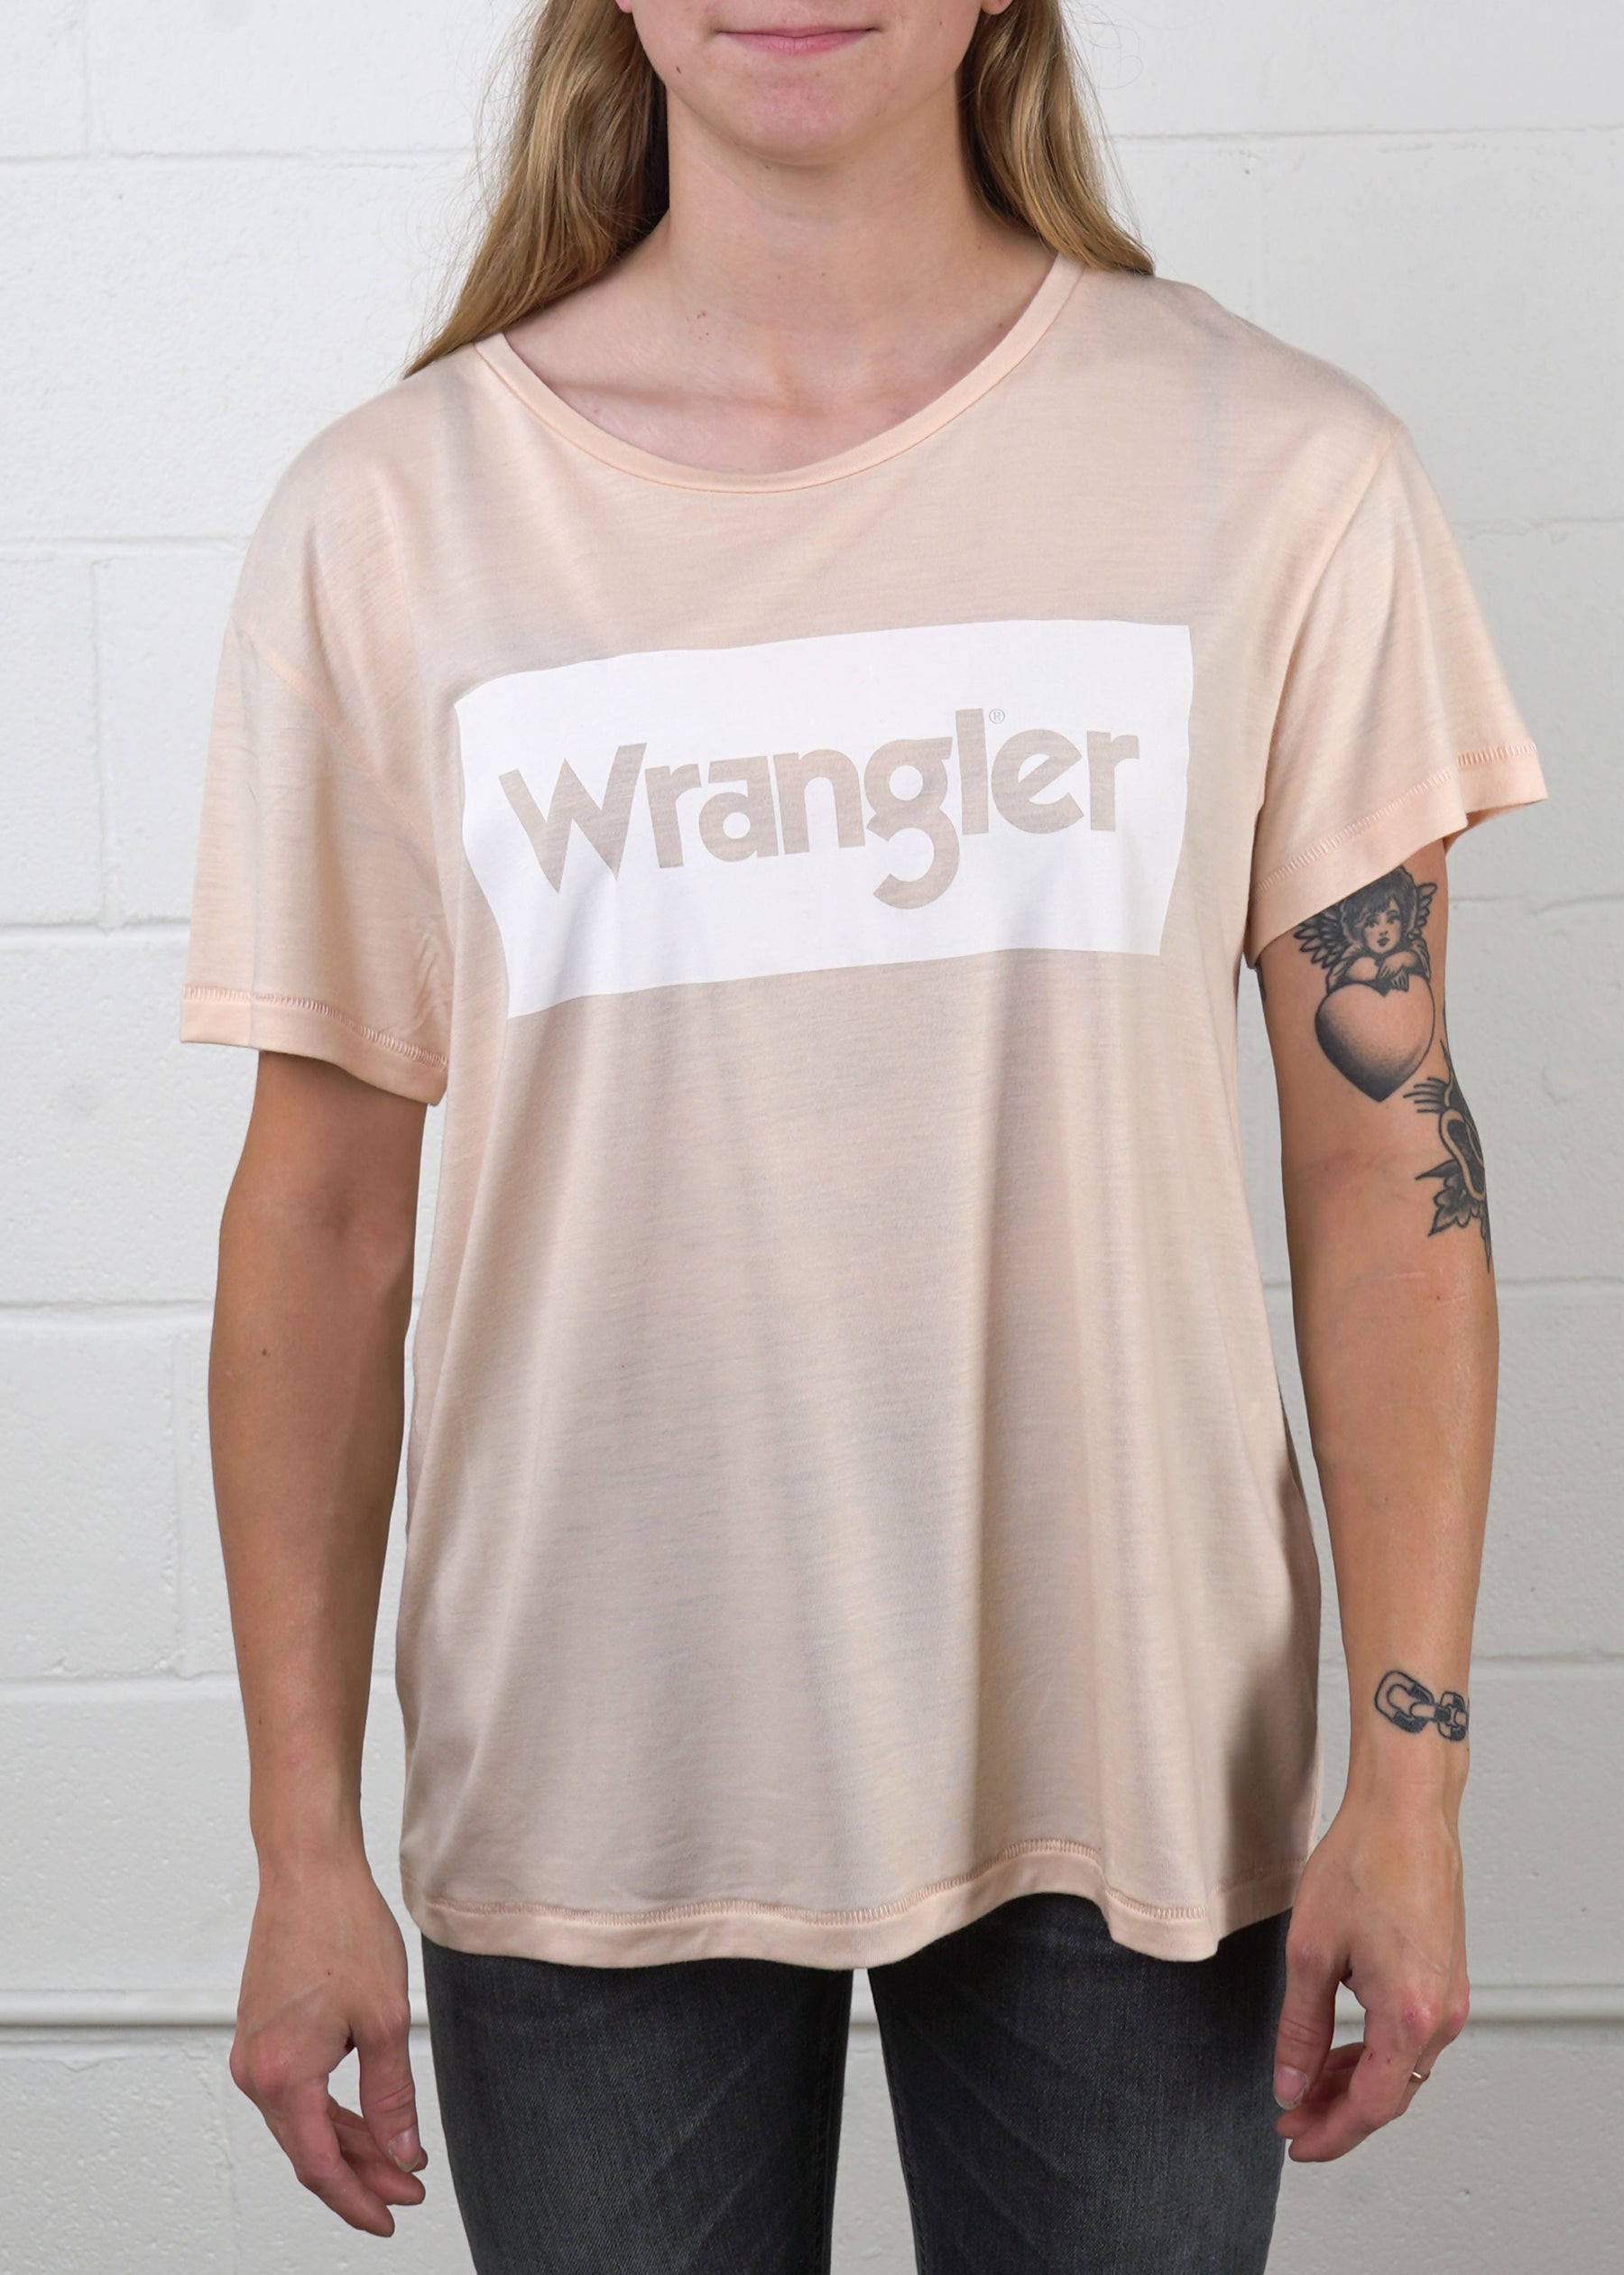 Wrangler - WAKSDTP Drape Logo Tee - Tender Peach - Hardpressed Print Studio